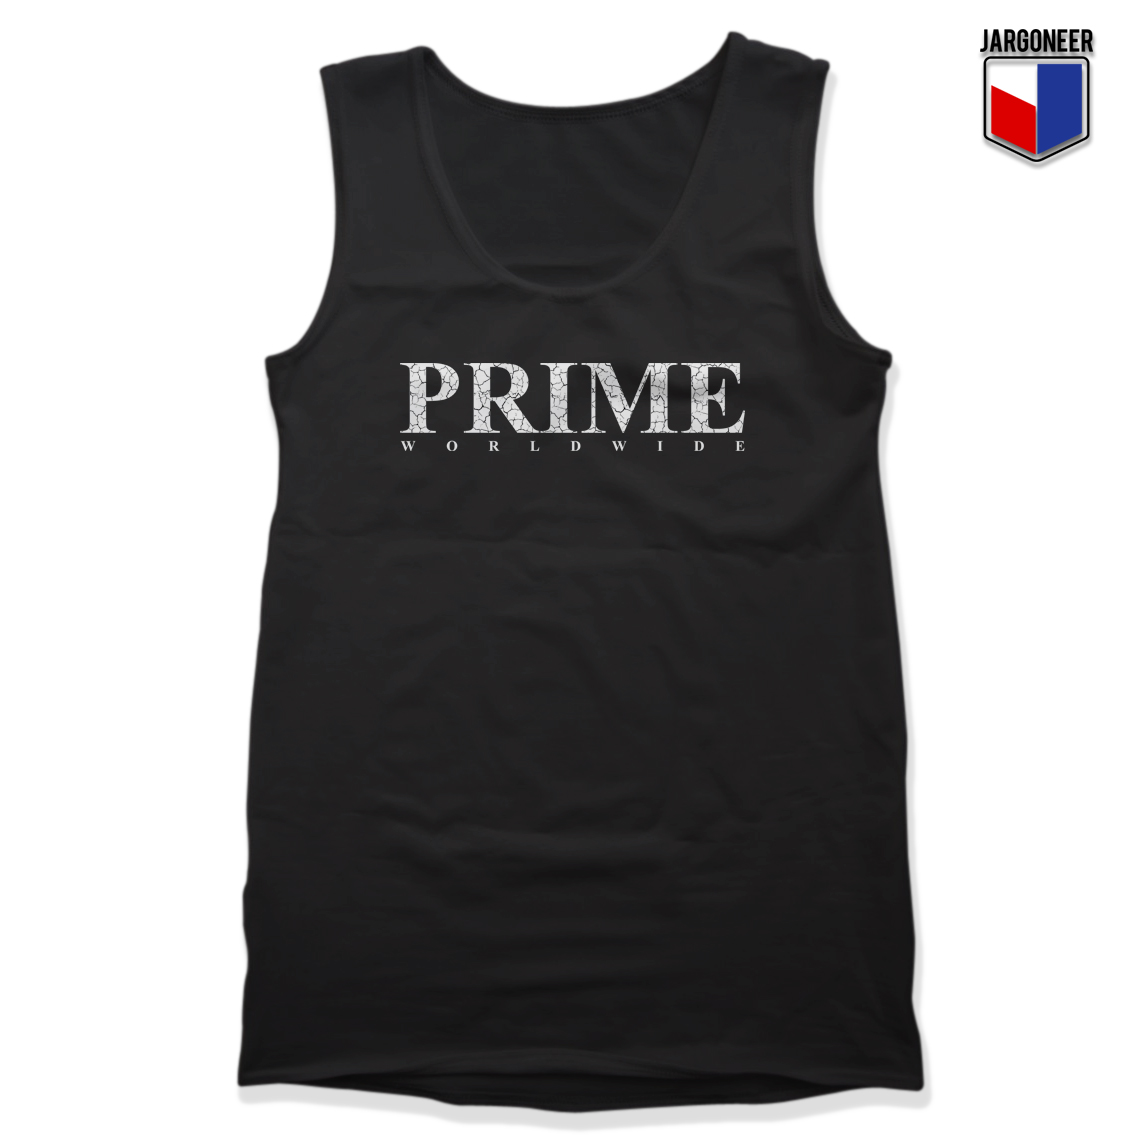 Prime Worldwide - Shop Unique Graphic Cool Shirt Designs